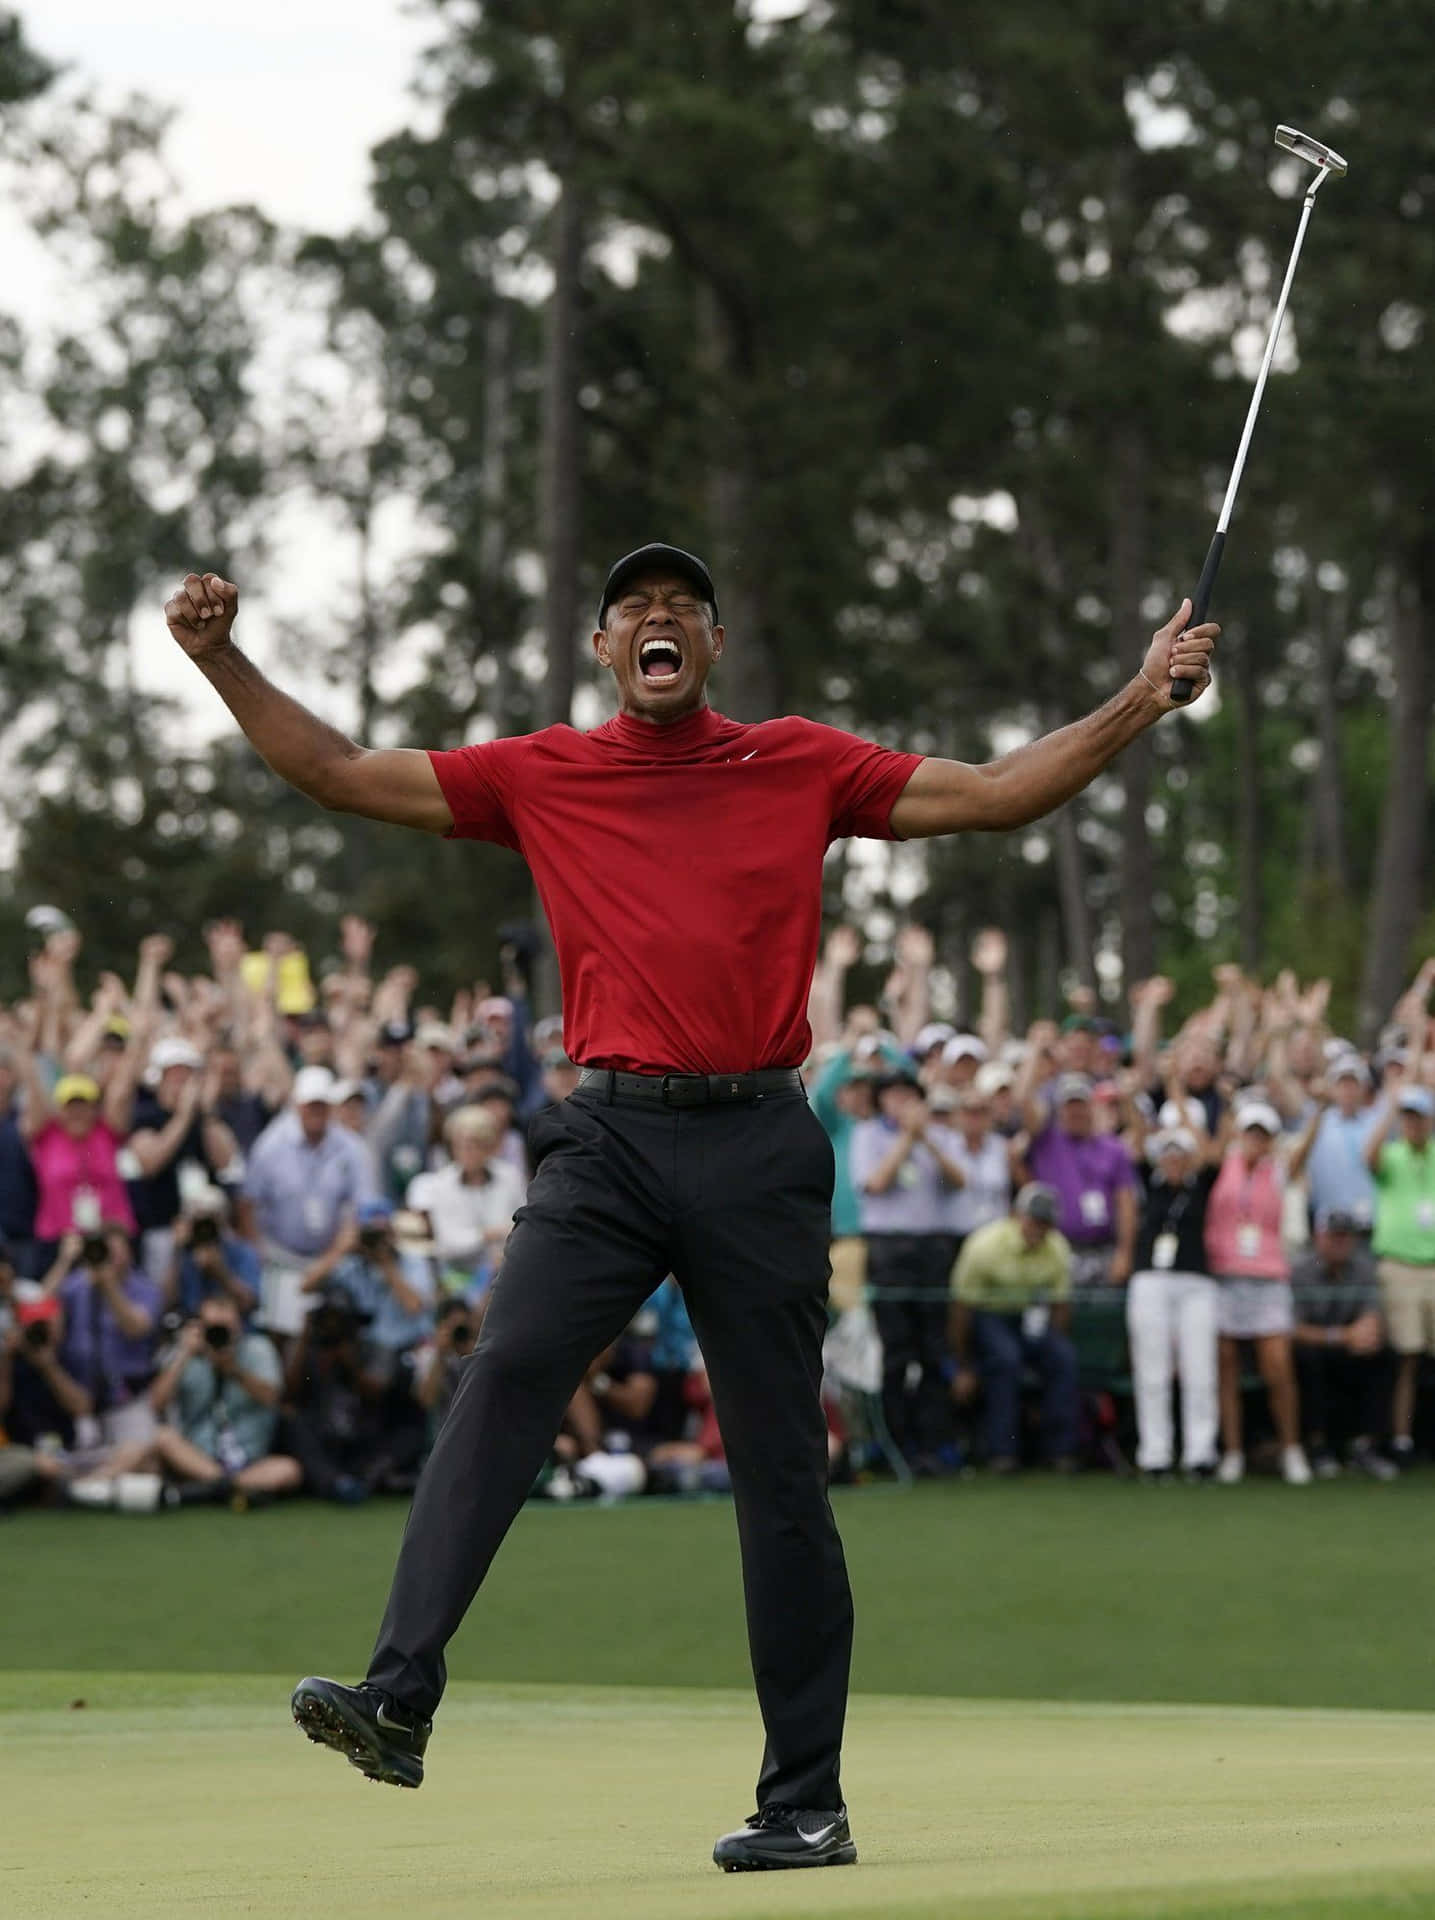 Den Slutliga Looken På Tiger Woods Iphone-bakgrund Är Helt Enkelt Fantastisk. Wallpaper